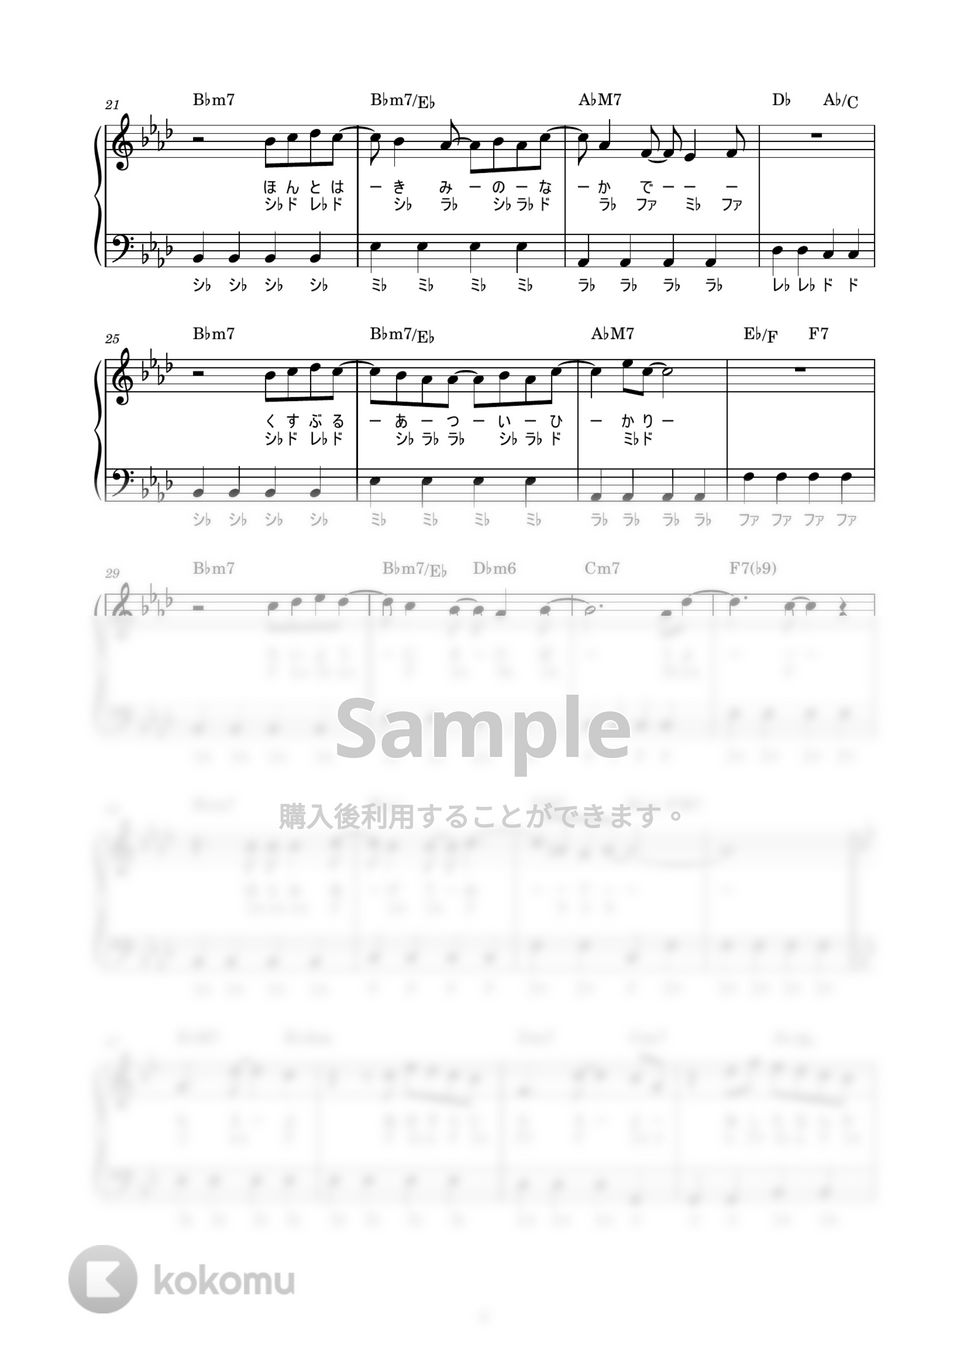 藤井風 - 燃えよ (かんたん / 歌詞付き / ドレミ付き / 初心者) by piano.tokyo